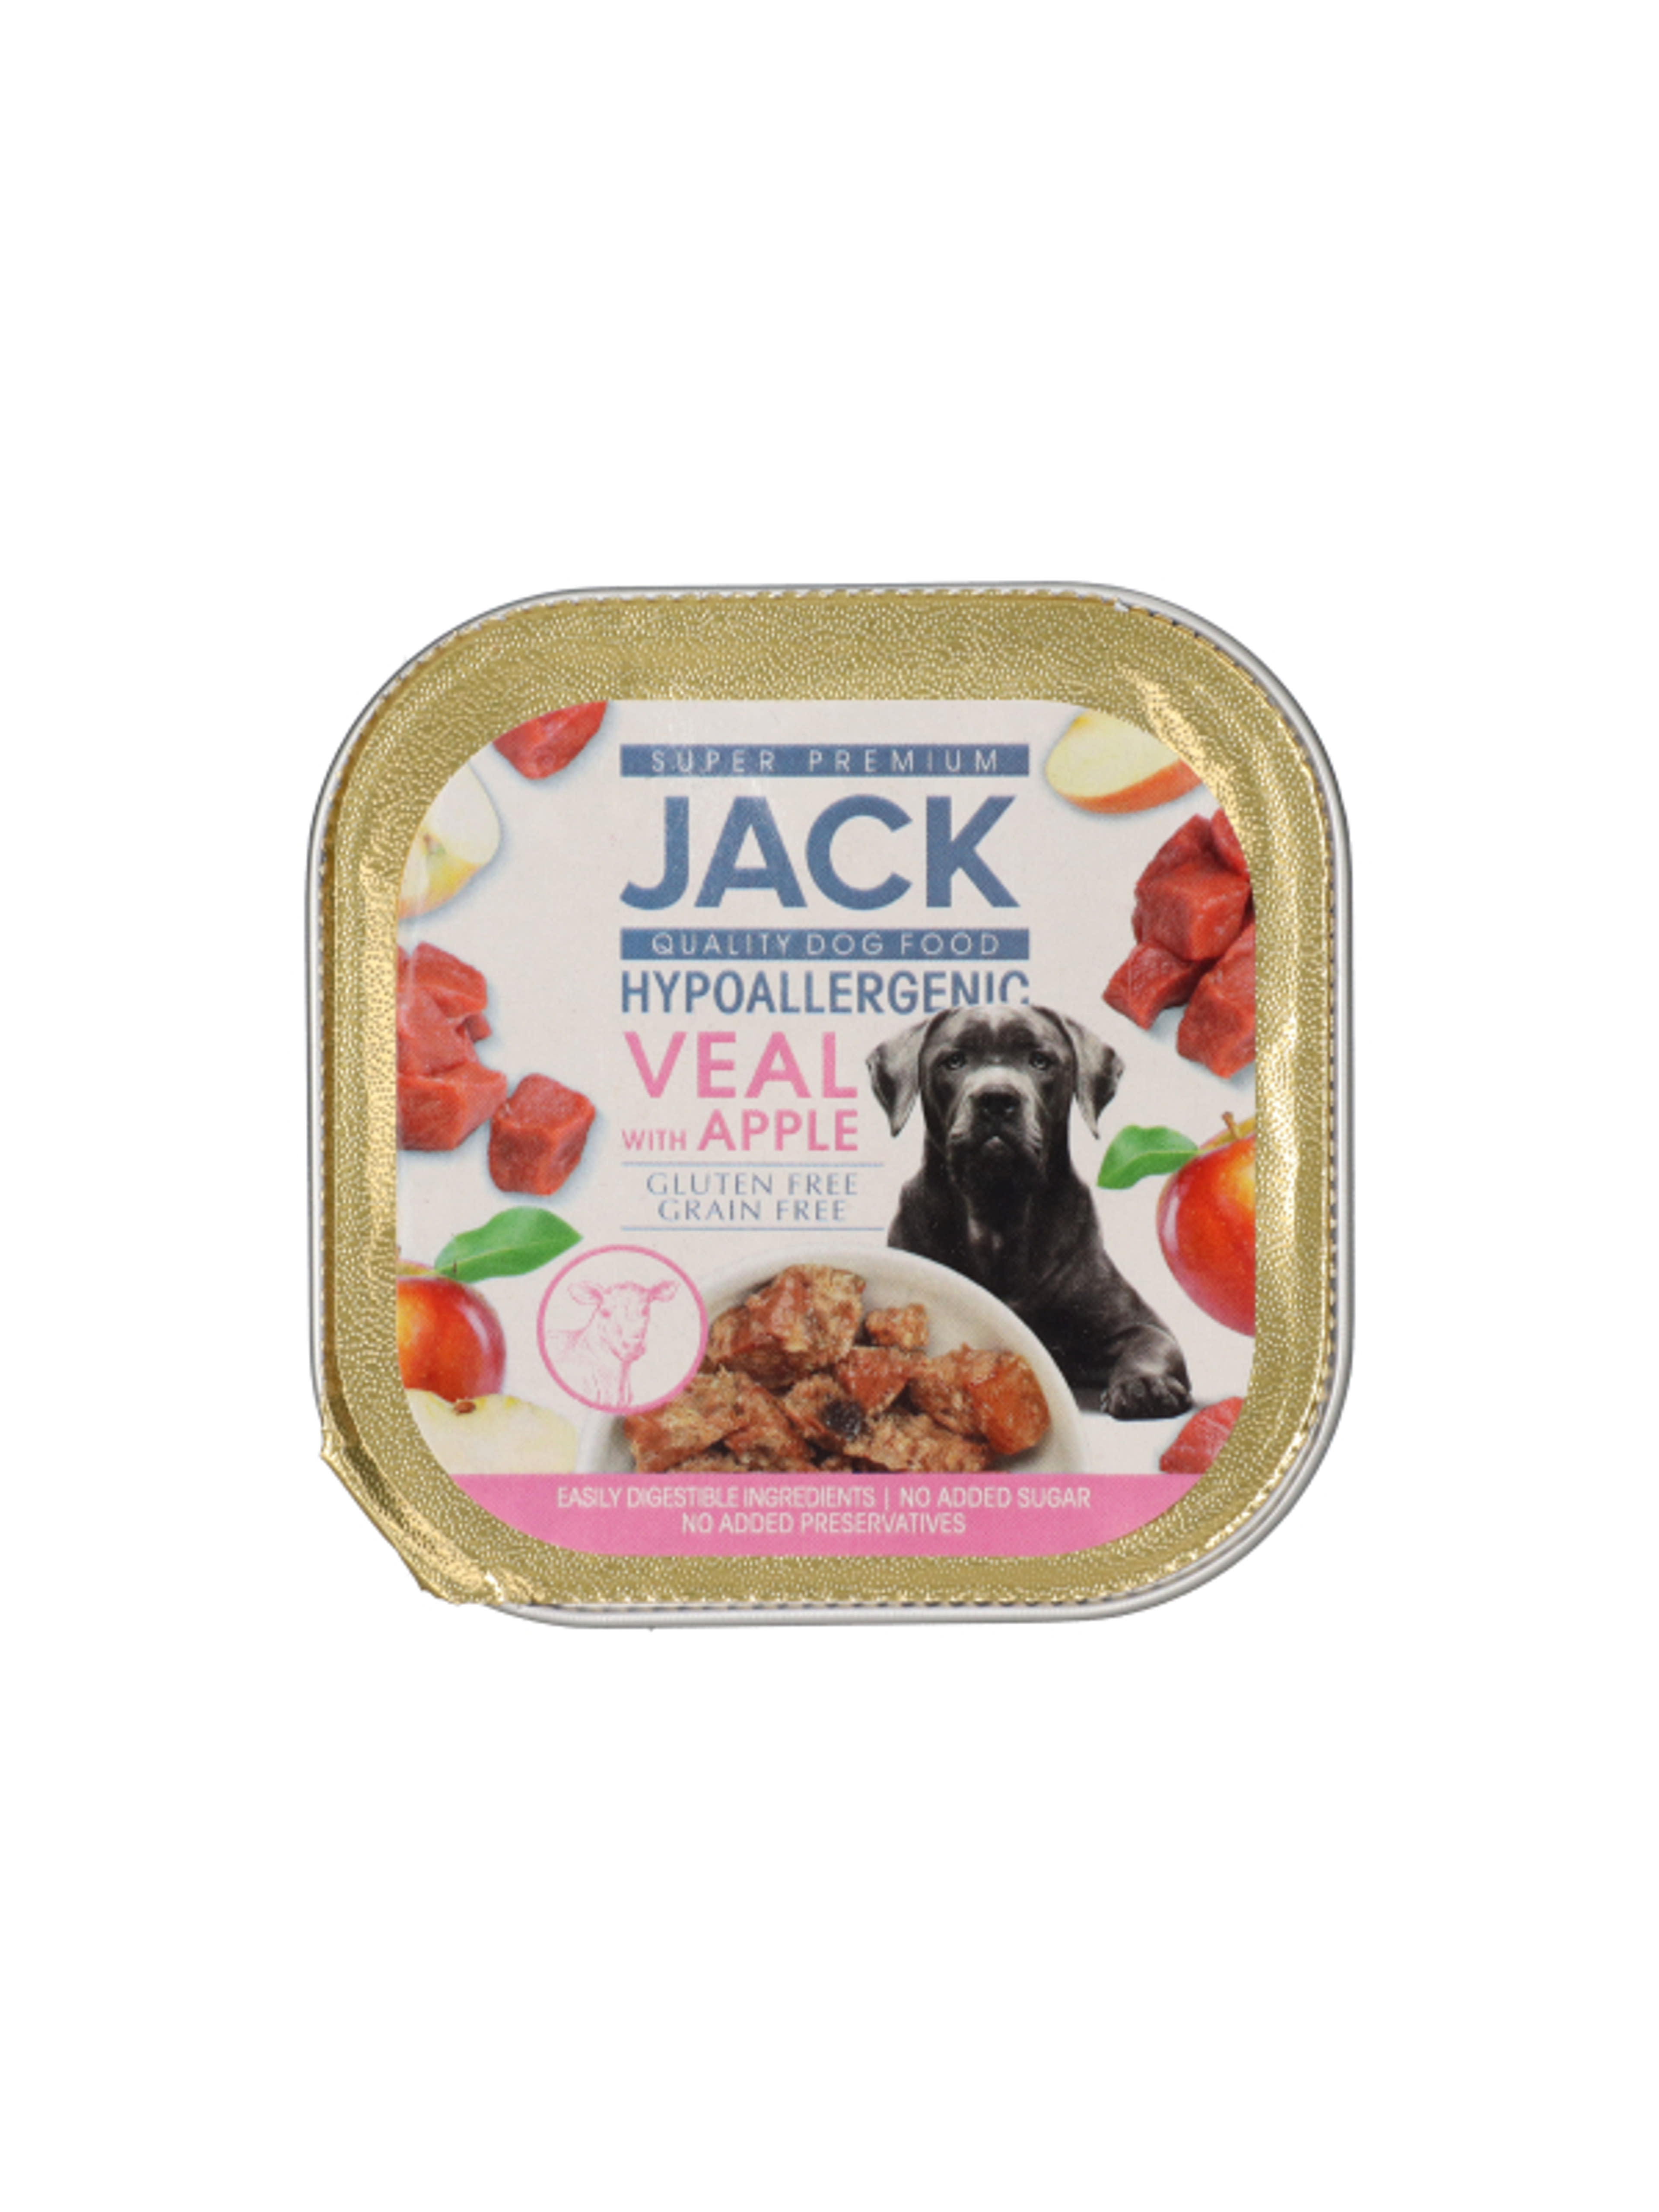 Jack Super Premium alutál borjúhús almával pástétom hipoallergén - 150 g